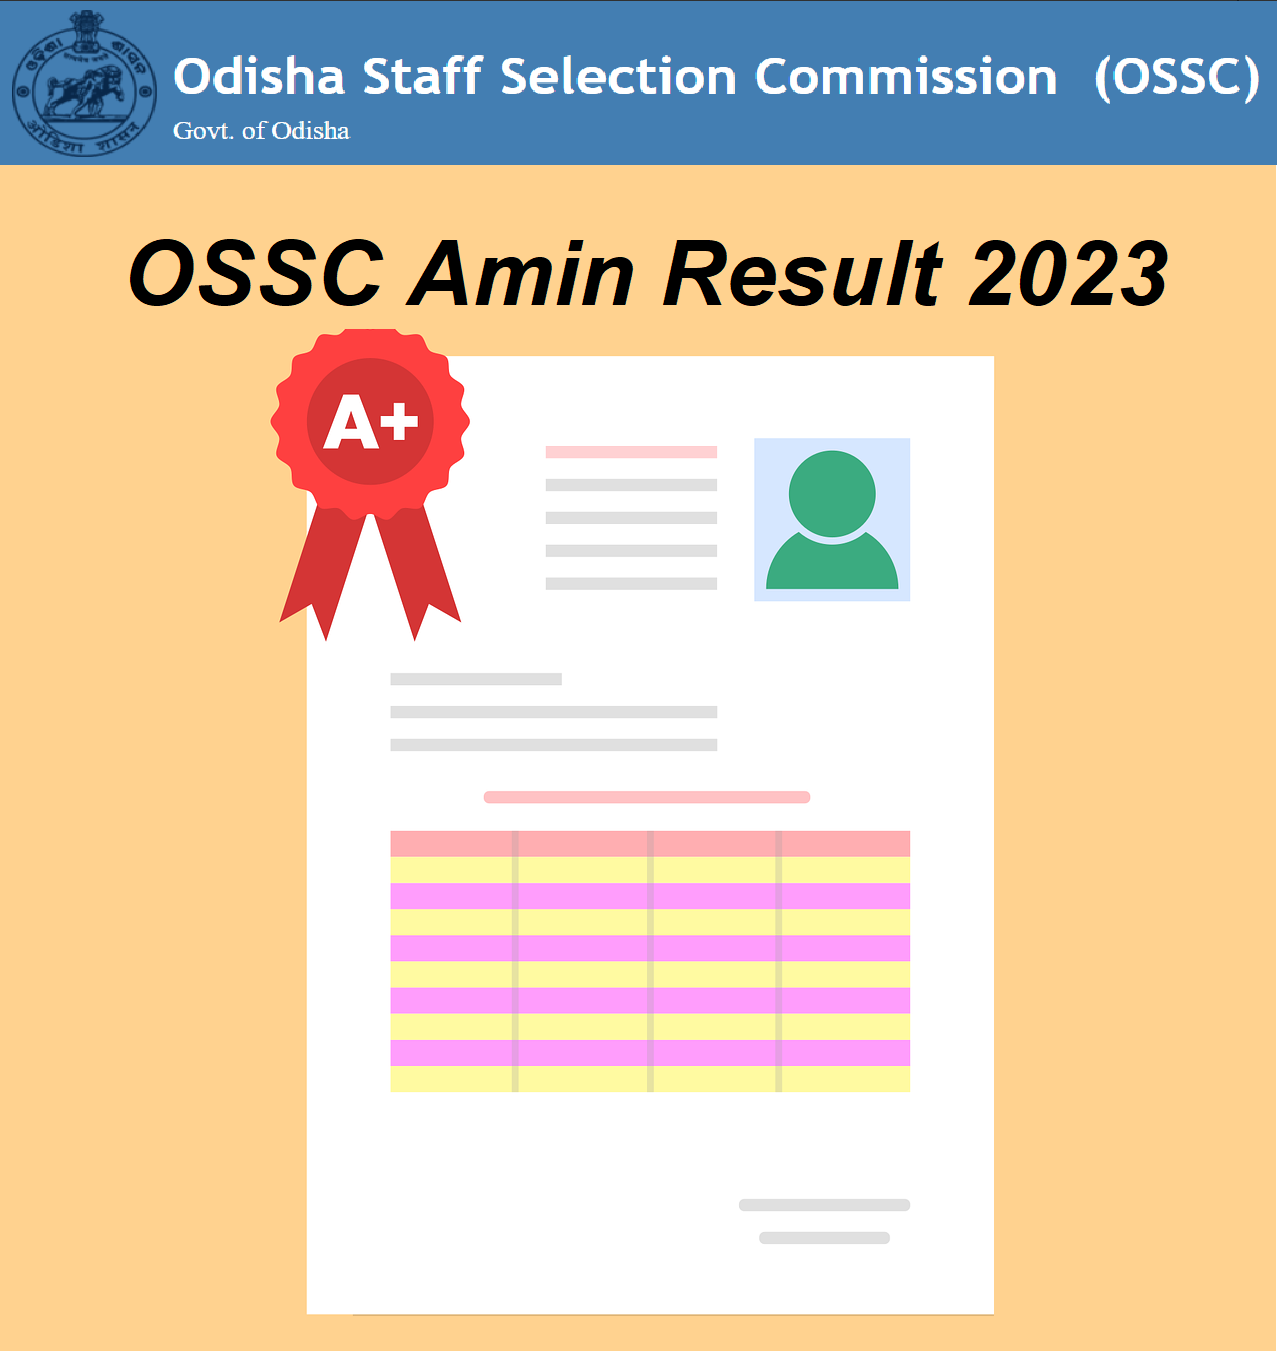 OSSC Amin Result